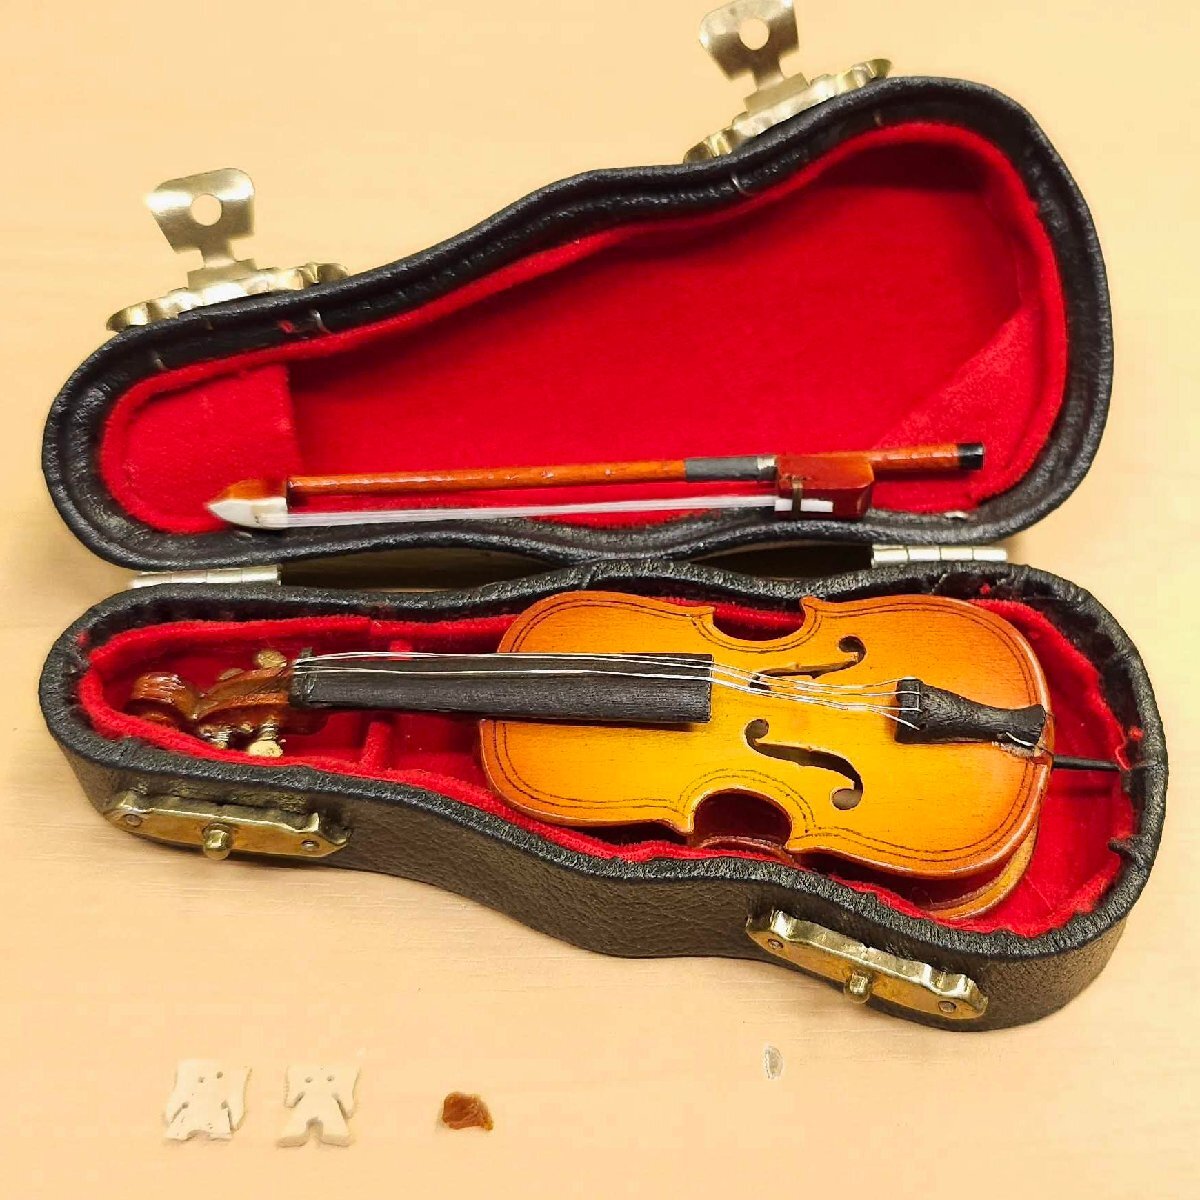  хорошая вещь 3 позиций комплект античный миниатюра музыкальные инструменты виолончель скрипка труба специальный чехол есть украшение произведение искусства струнные инструменты духовые инструменты 